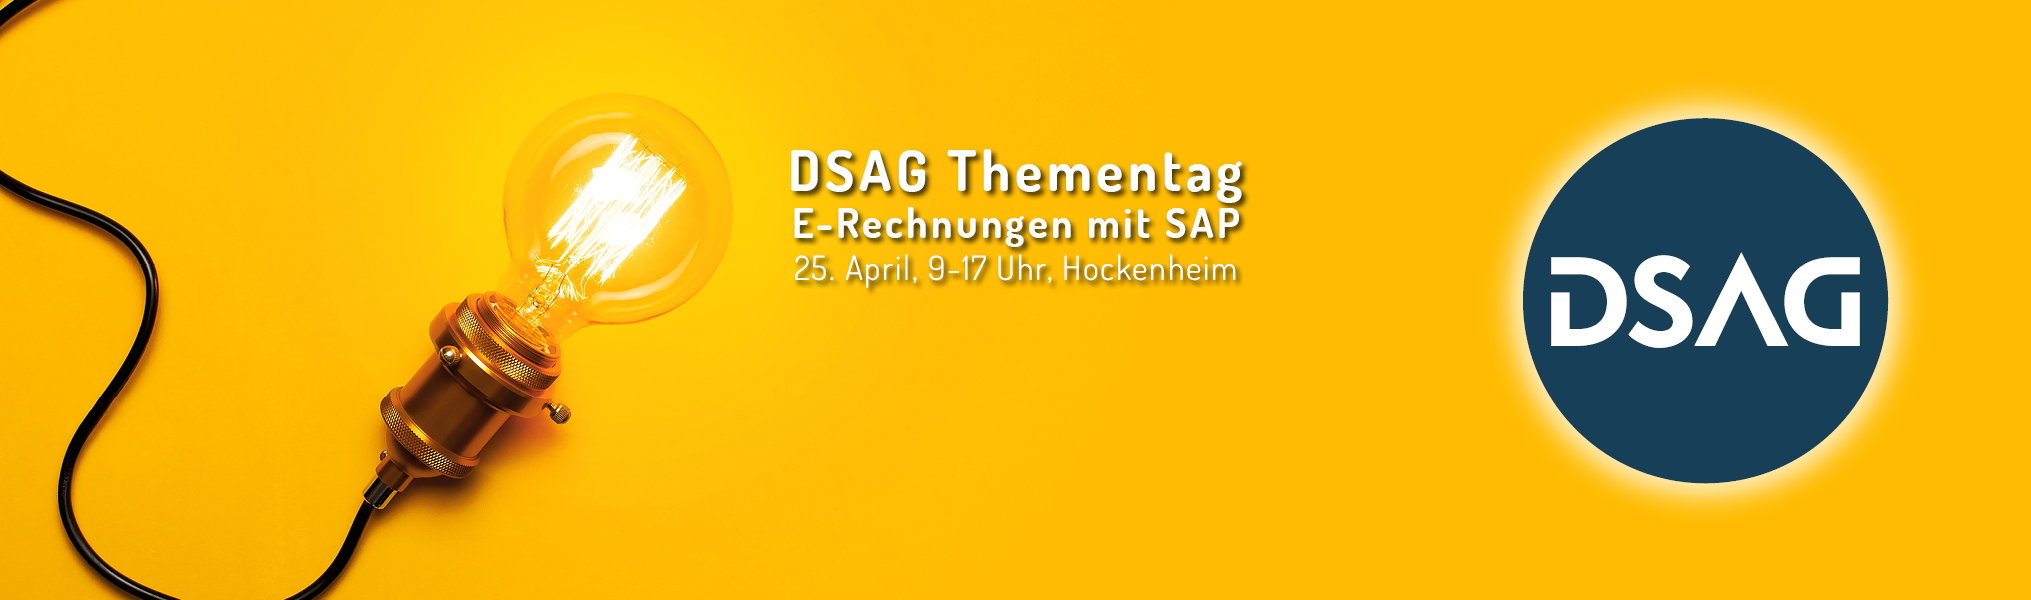 DSAG Thementag: E-Rechnungen mit SAP